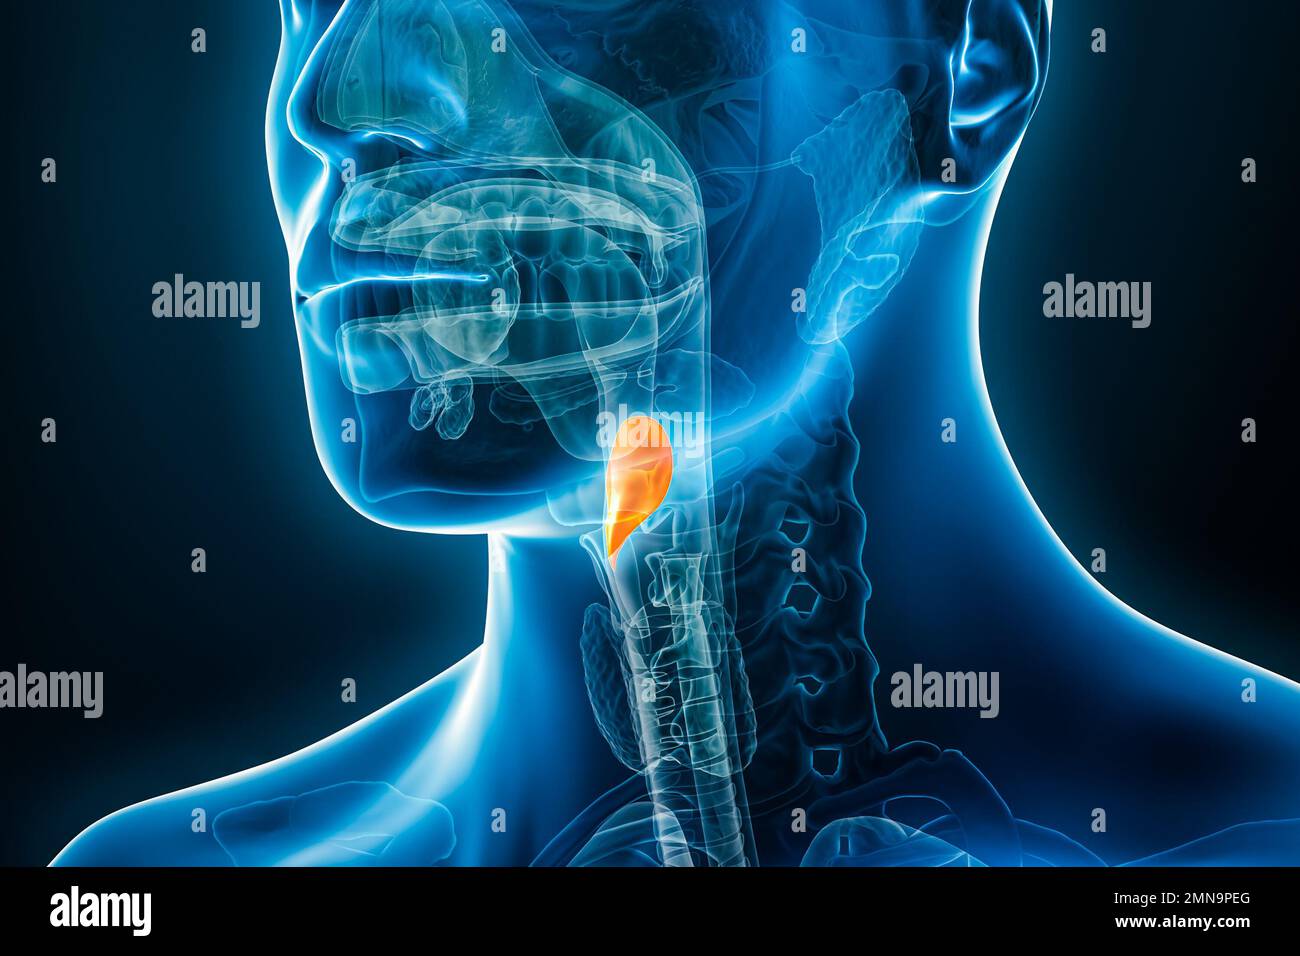 Image radiographique de l'illustration de rendu de l'épiglottis 3D avec contours de corps mâles. Anatomie humaine, médecine, biologie, science, concepts de santé. Banque D'Images